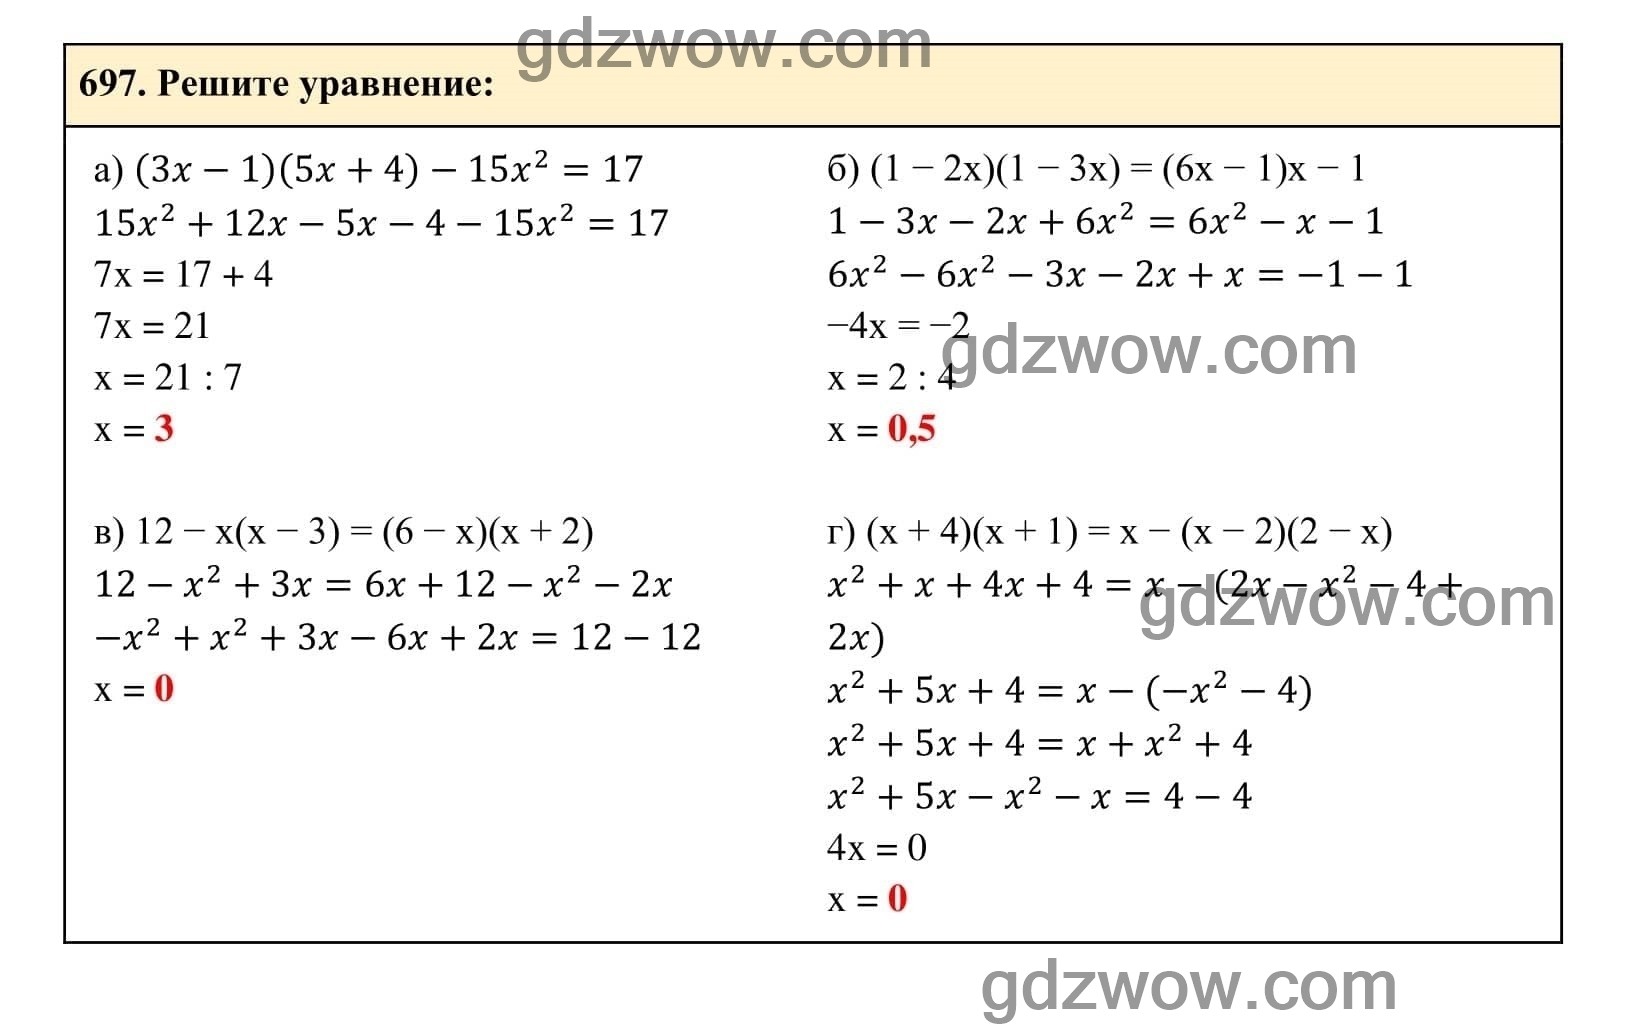 Упражнение 697 - ГДЗ по Алгебре 7 класс Учебник Макарычев (решебник) - GDZwow